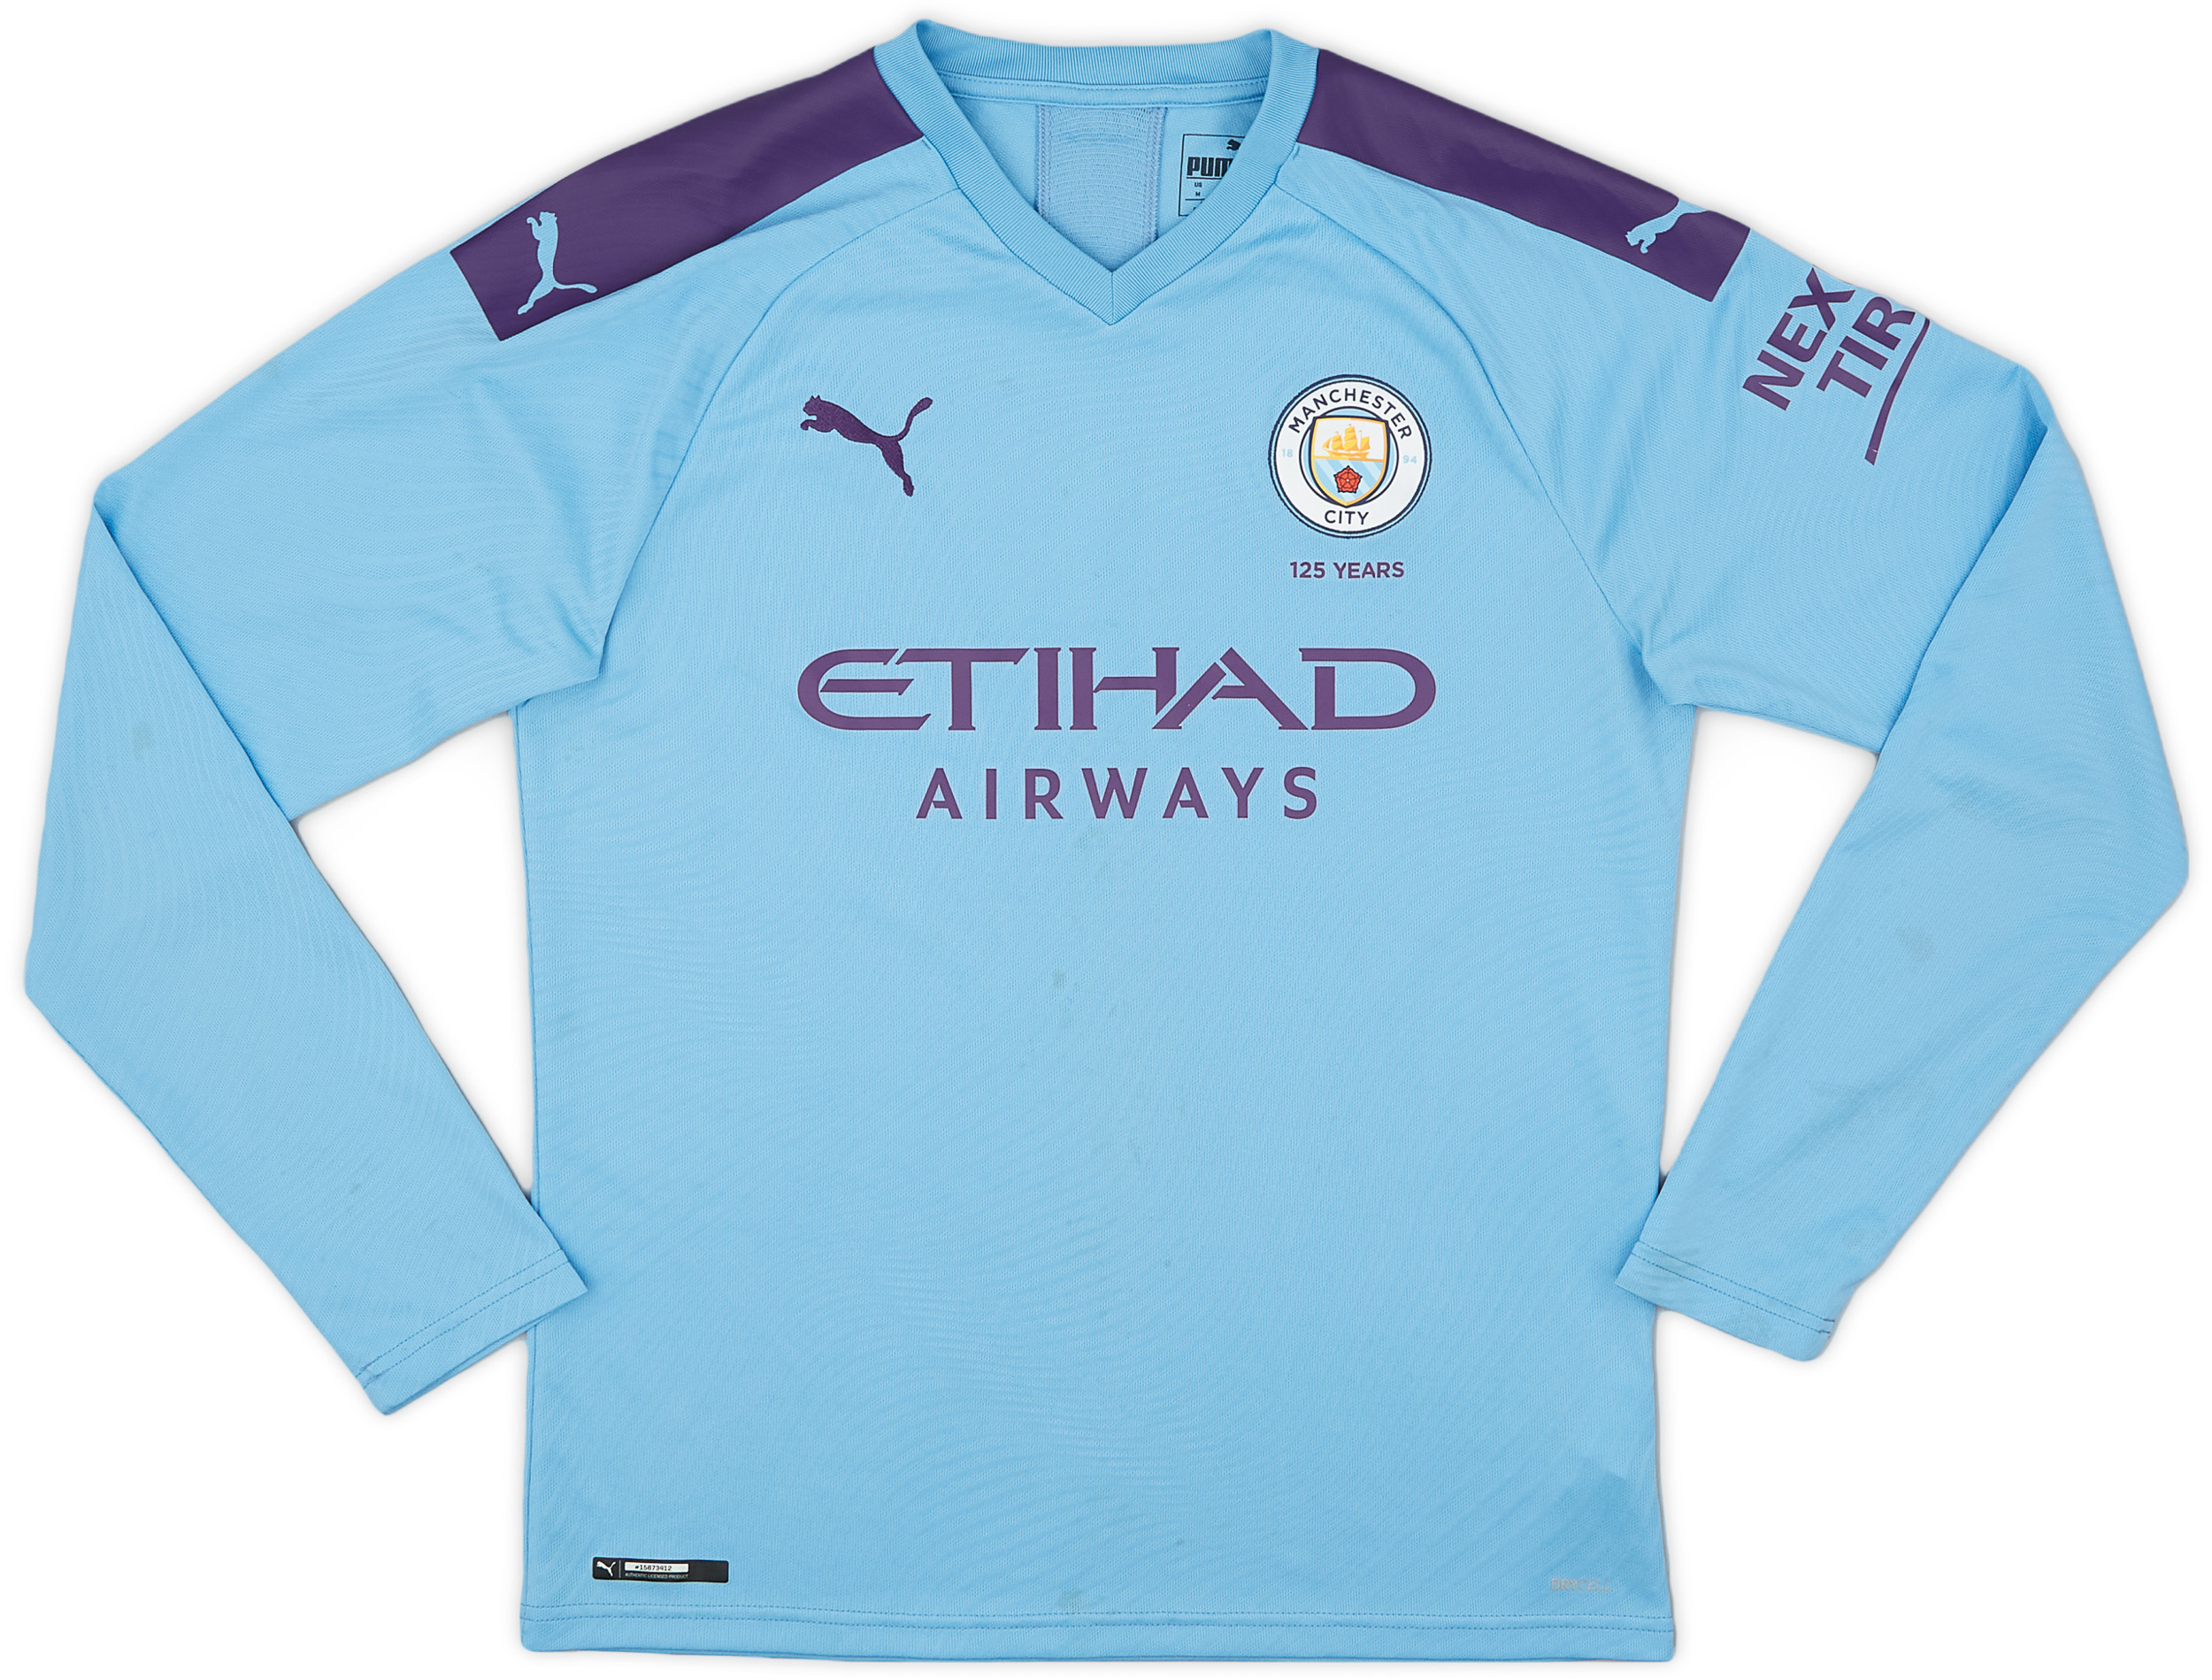 2019-20 Manchester City Home Shirt - 5/10 - ()